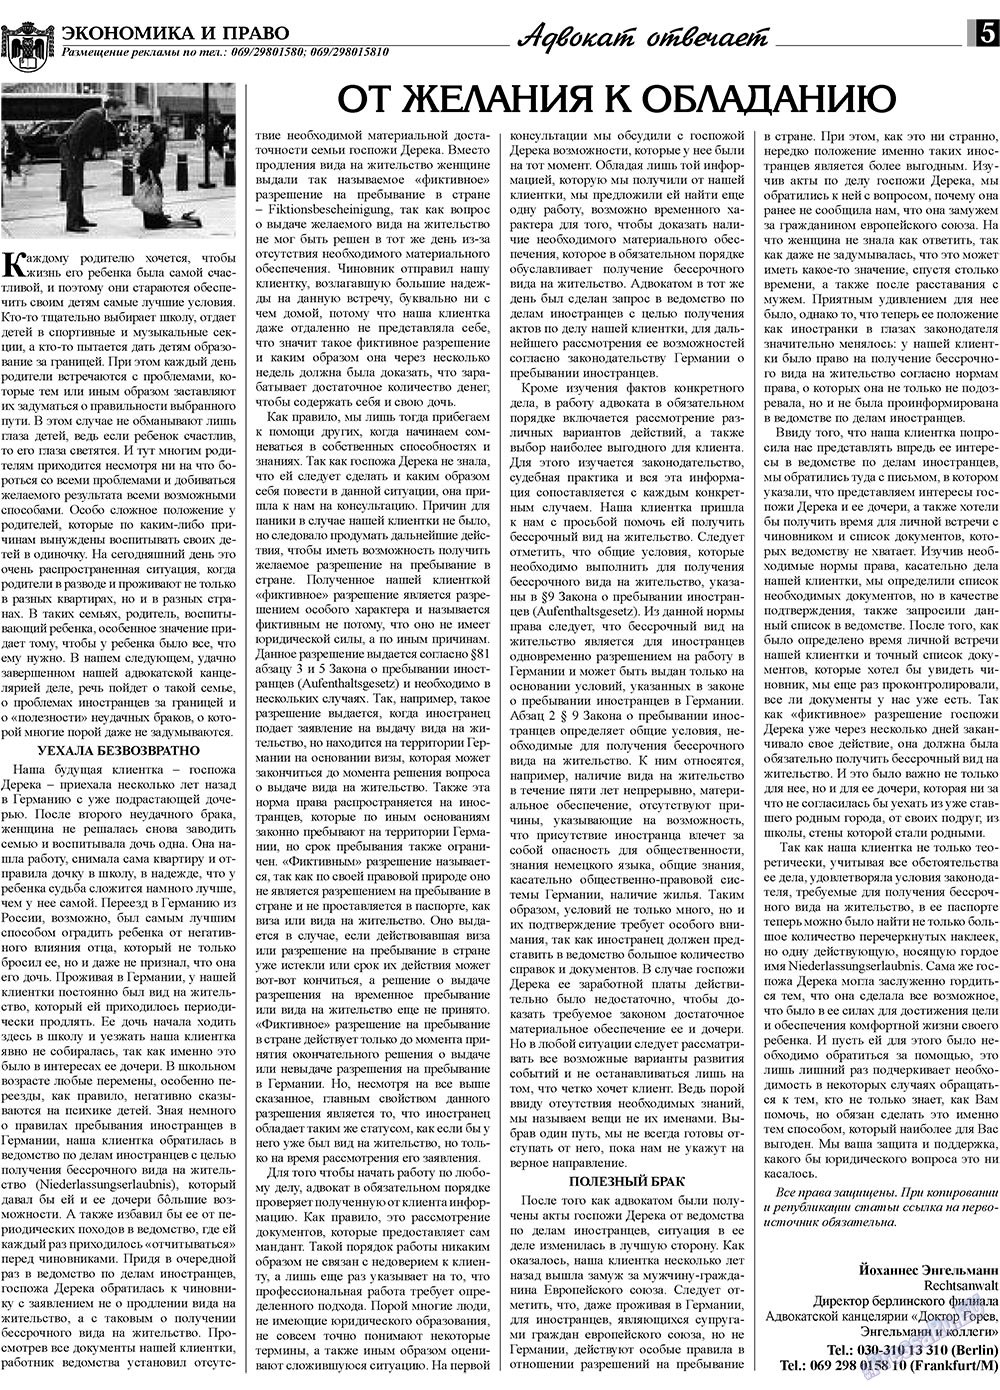 Экономика и право, газета. 2010 №1 стр.5